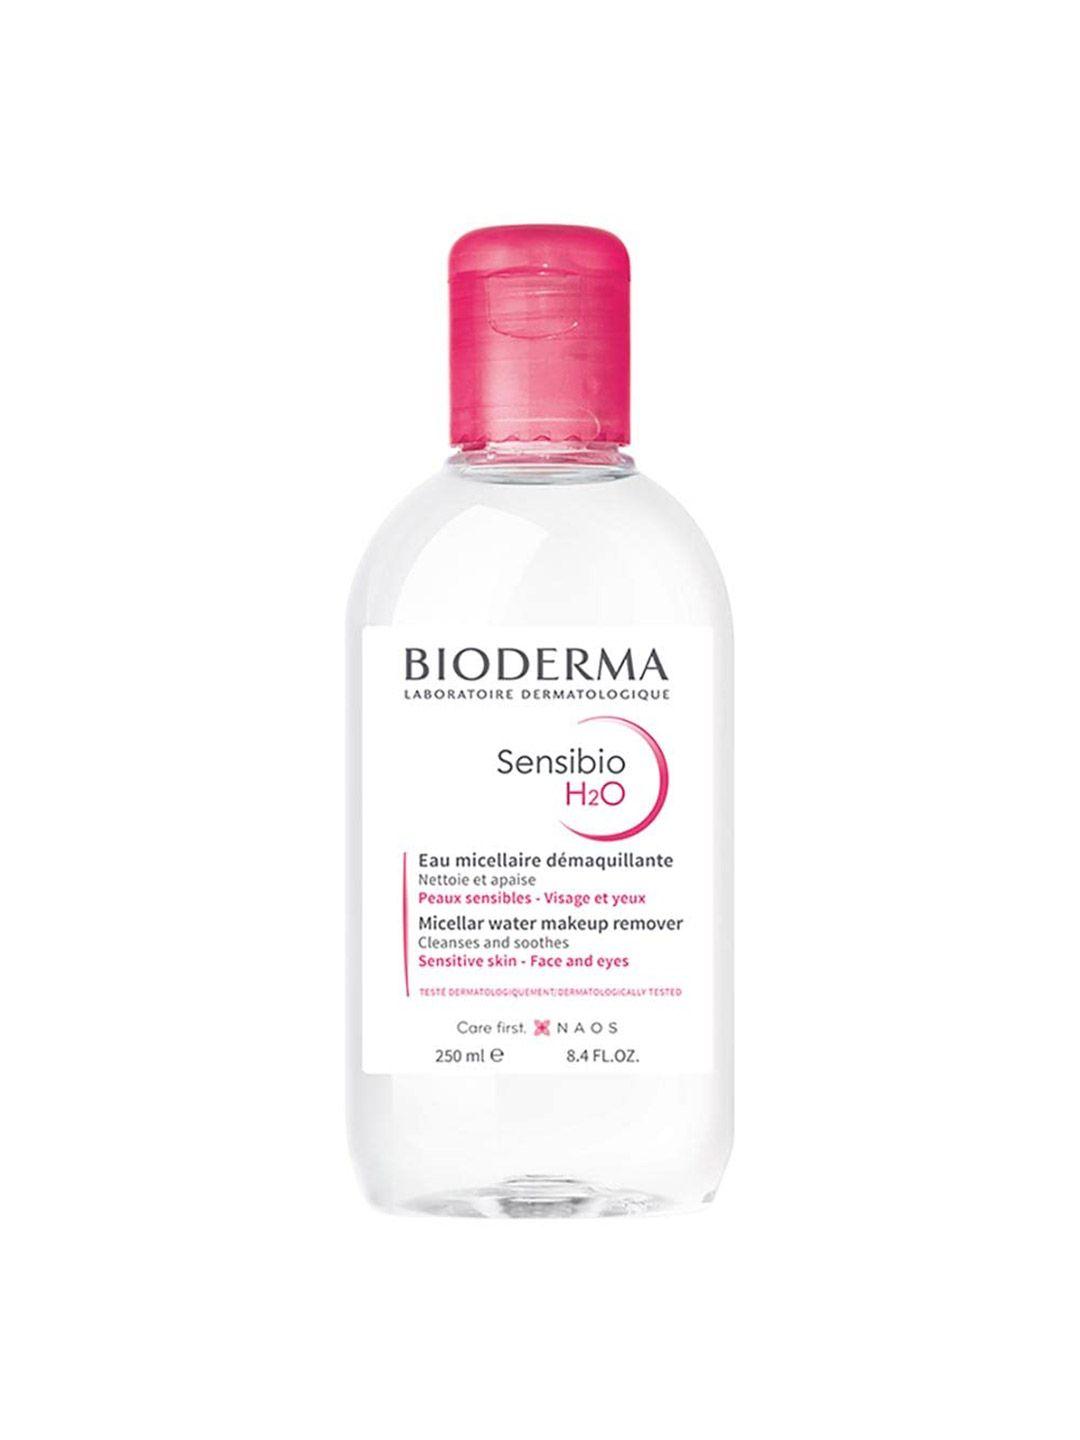 bioderma sensibio h2o micellar cleansing water & makeup removing solution - 250 ml